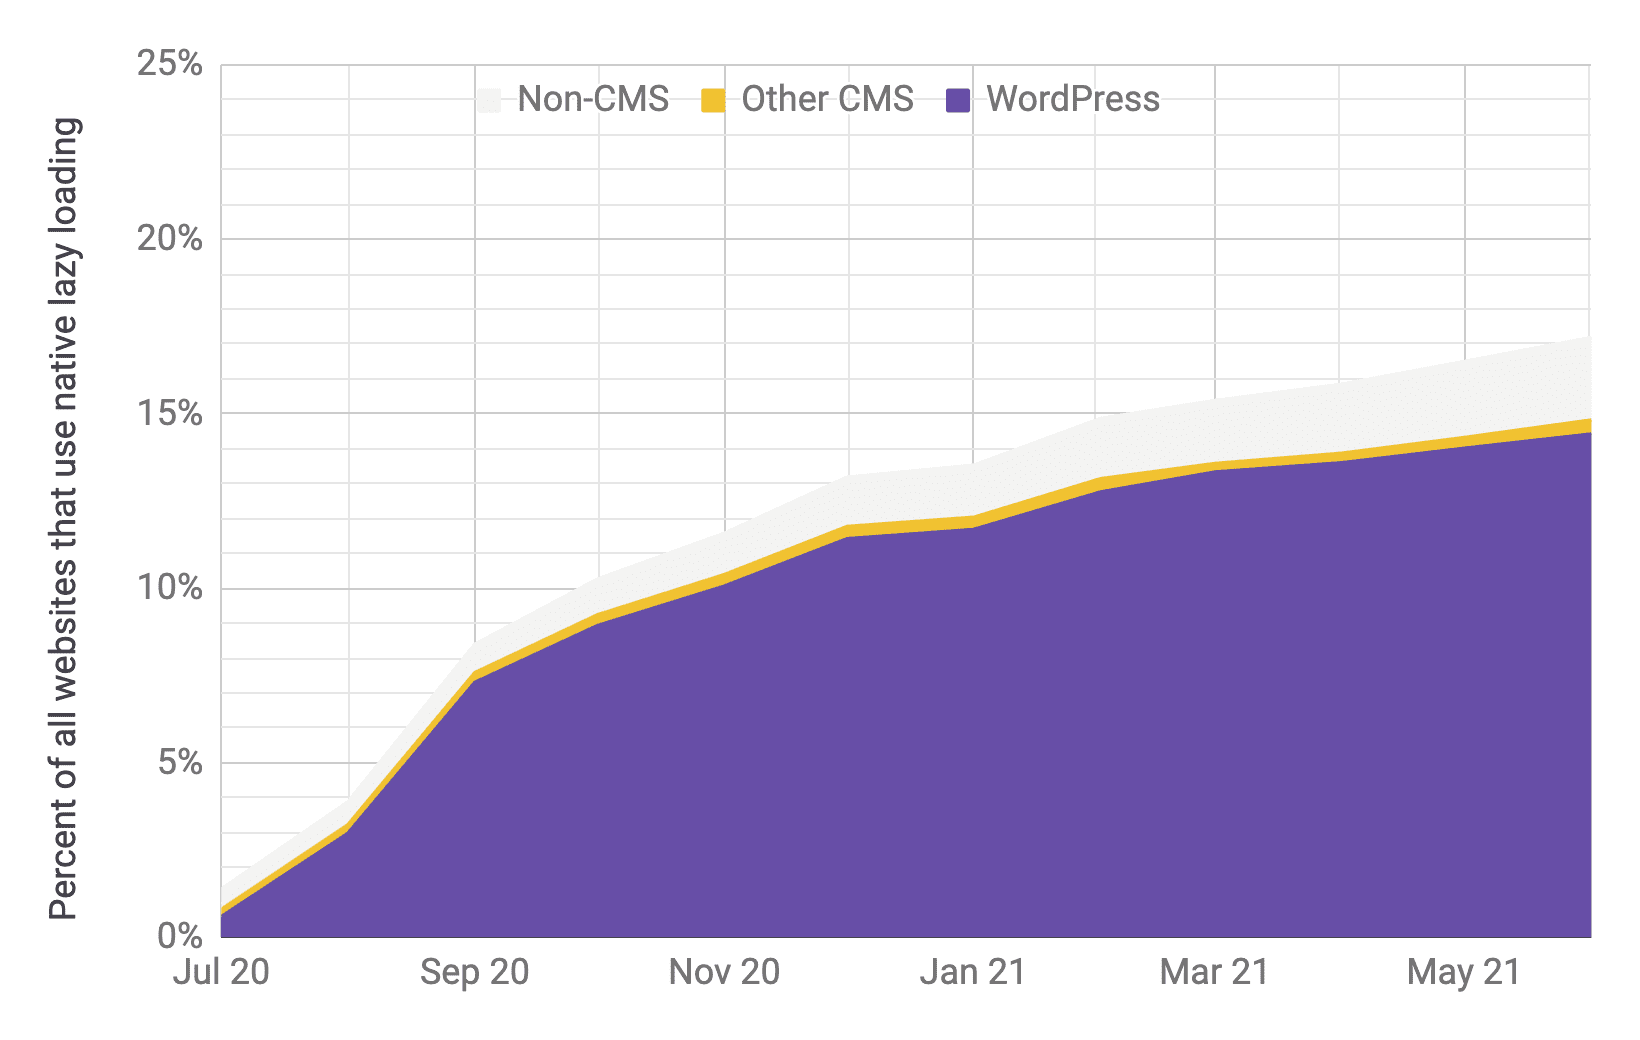 Grafico con serie temporale dell&#39;adozione del caricamento lento, in cui WordPress è il player predominante rispetto ad altri CMS e sistemi non CMS, con proporzioni simili al grafico precedente. È dimostrato che l’adozione totale è aumentata rapidamente dall’1% al 17% da luglio 2020 a giugno 2021.